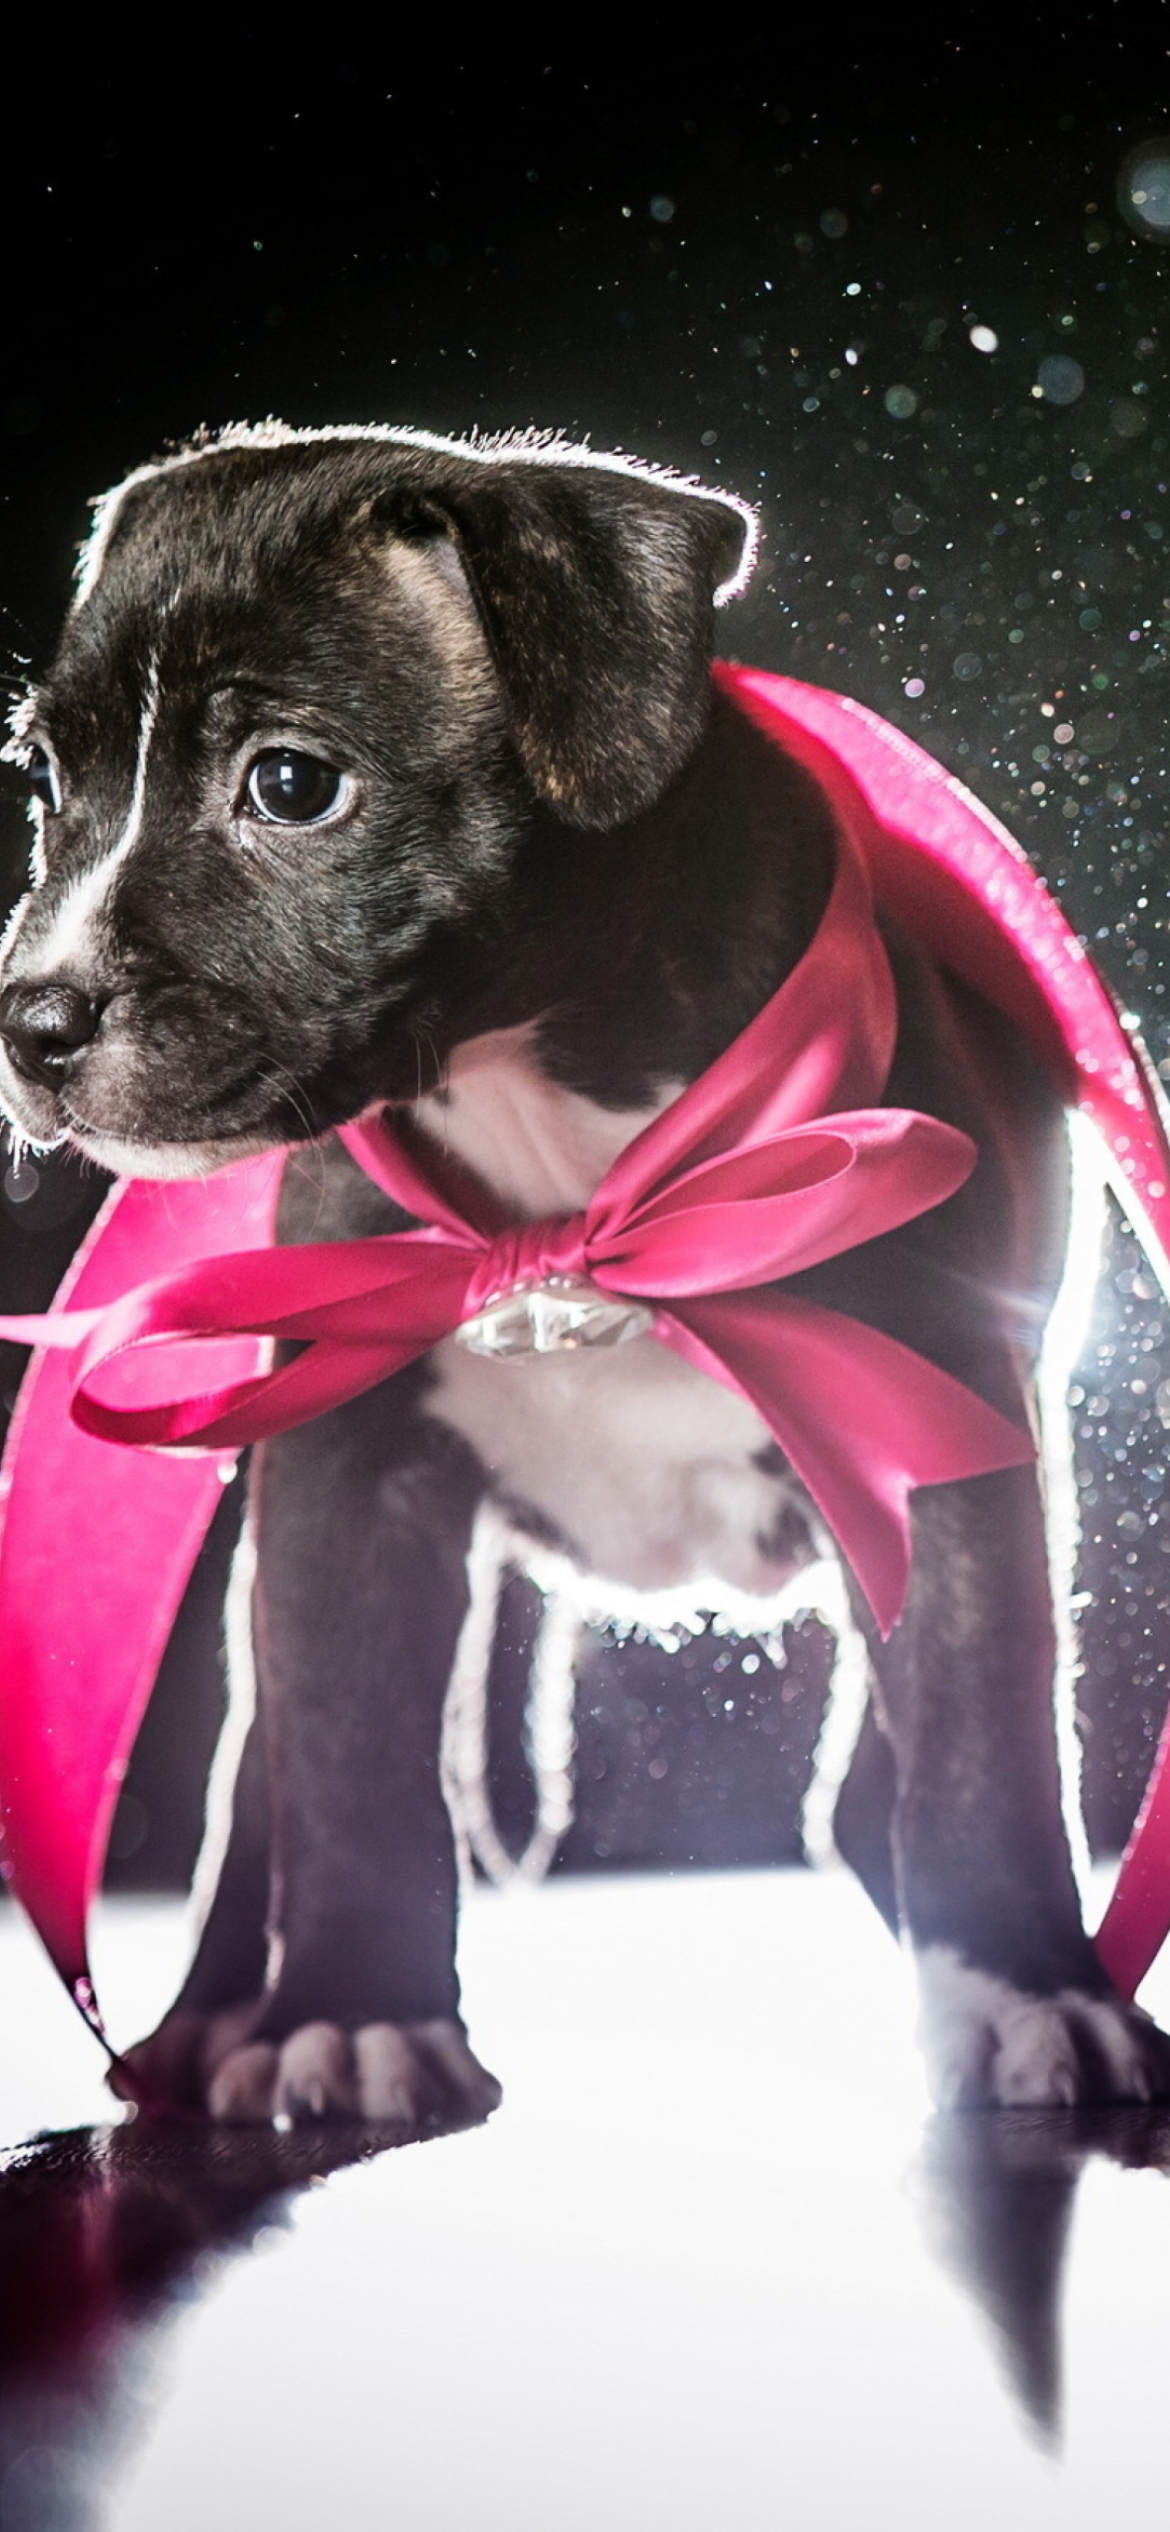 Cute Puppy In Pink Cloak wallpaper 1170x2532